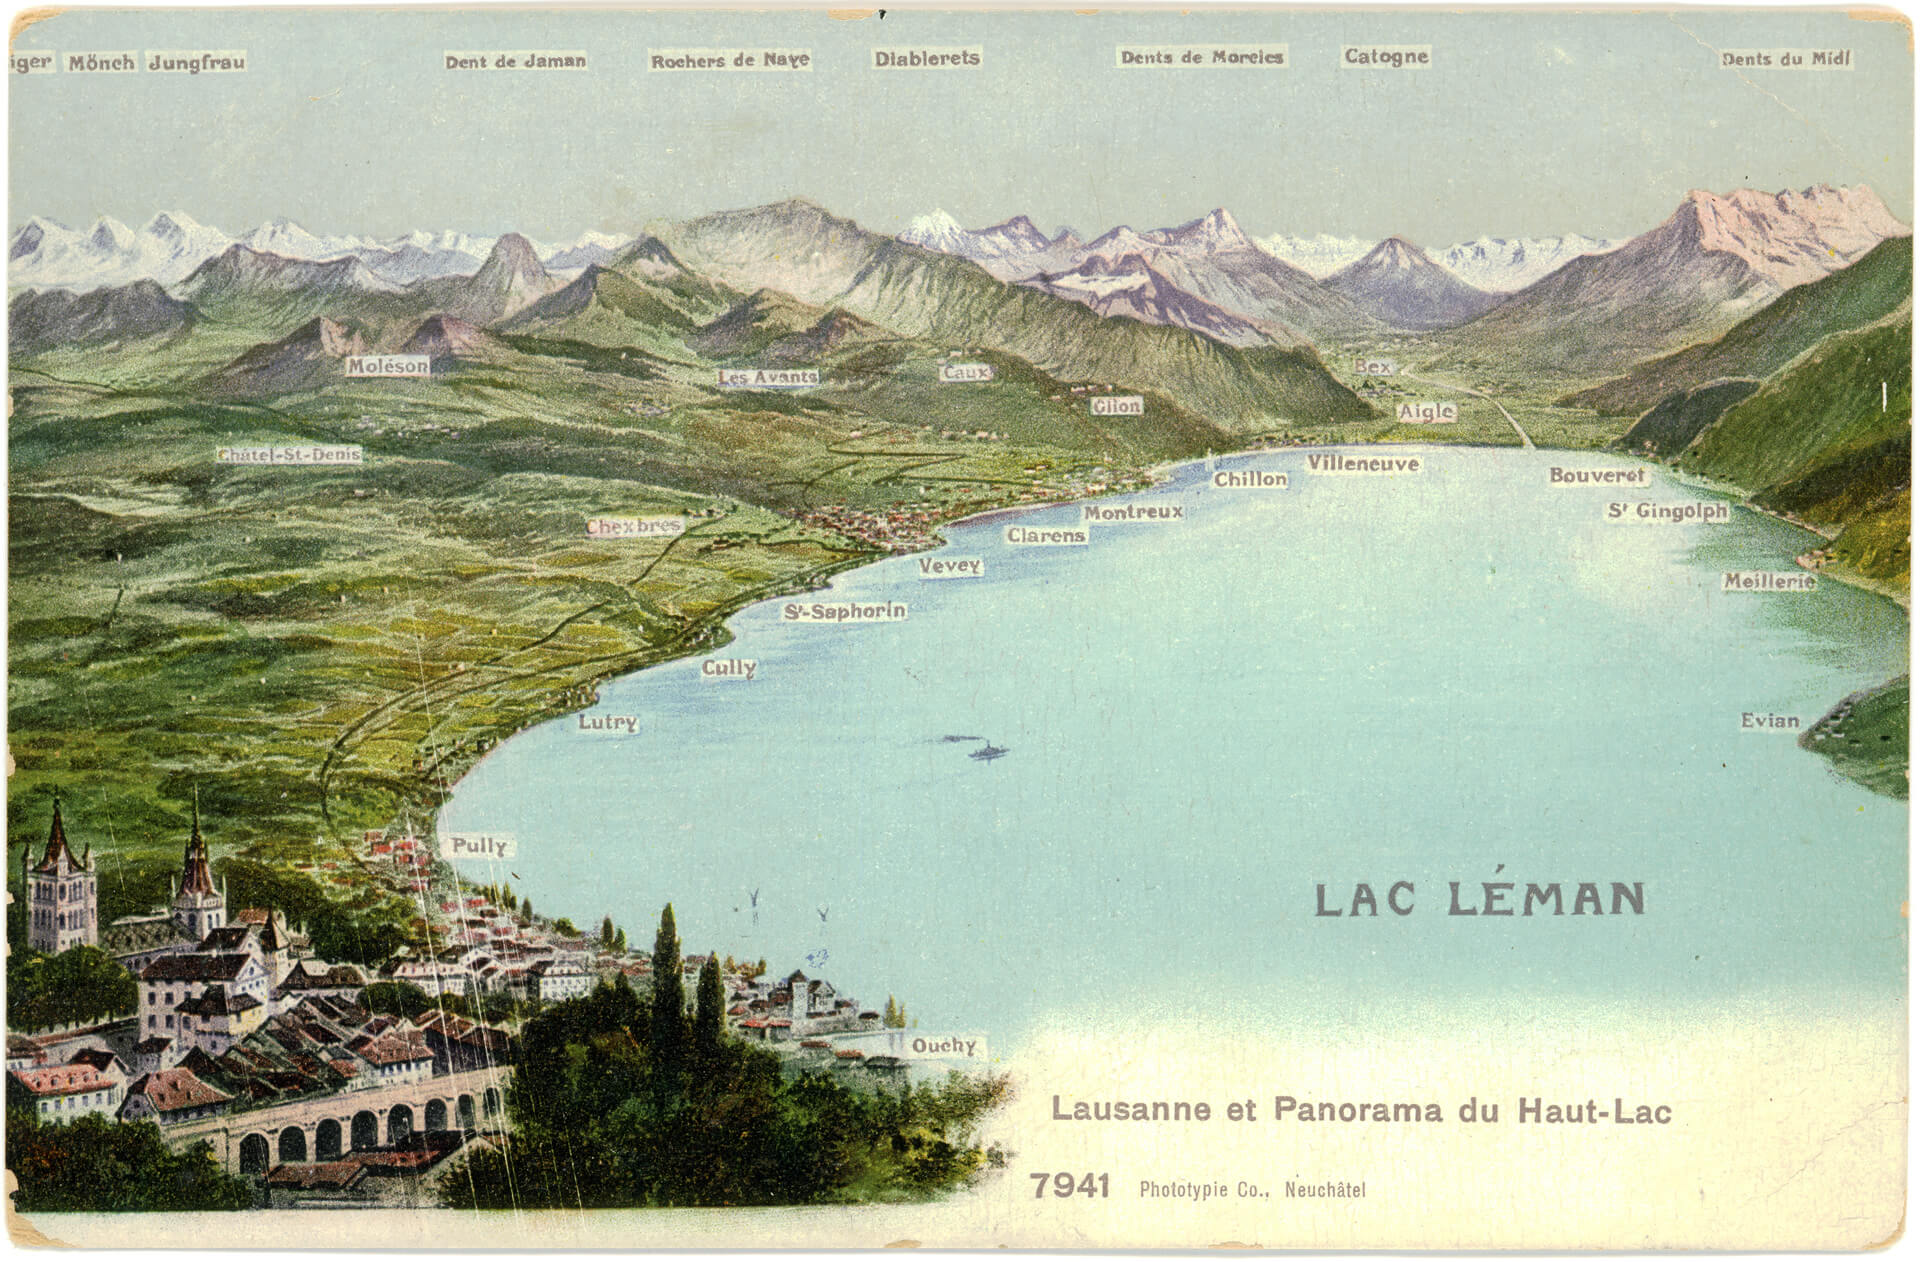 Panorama aerien du lac Leman et de Lausanne